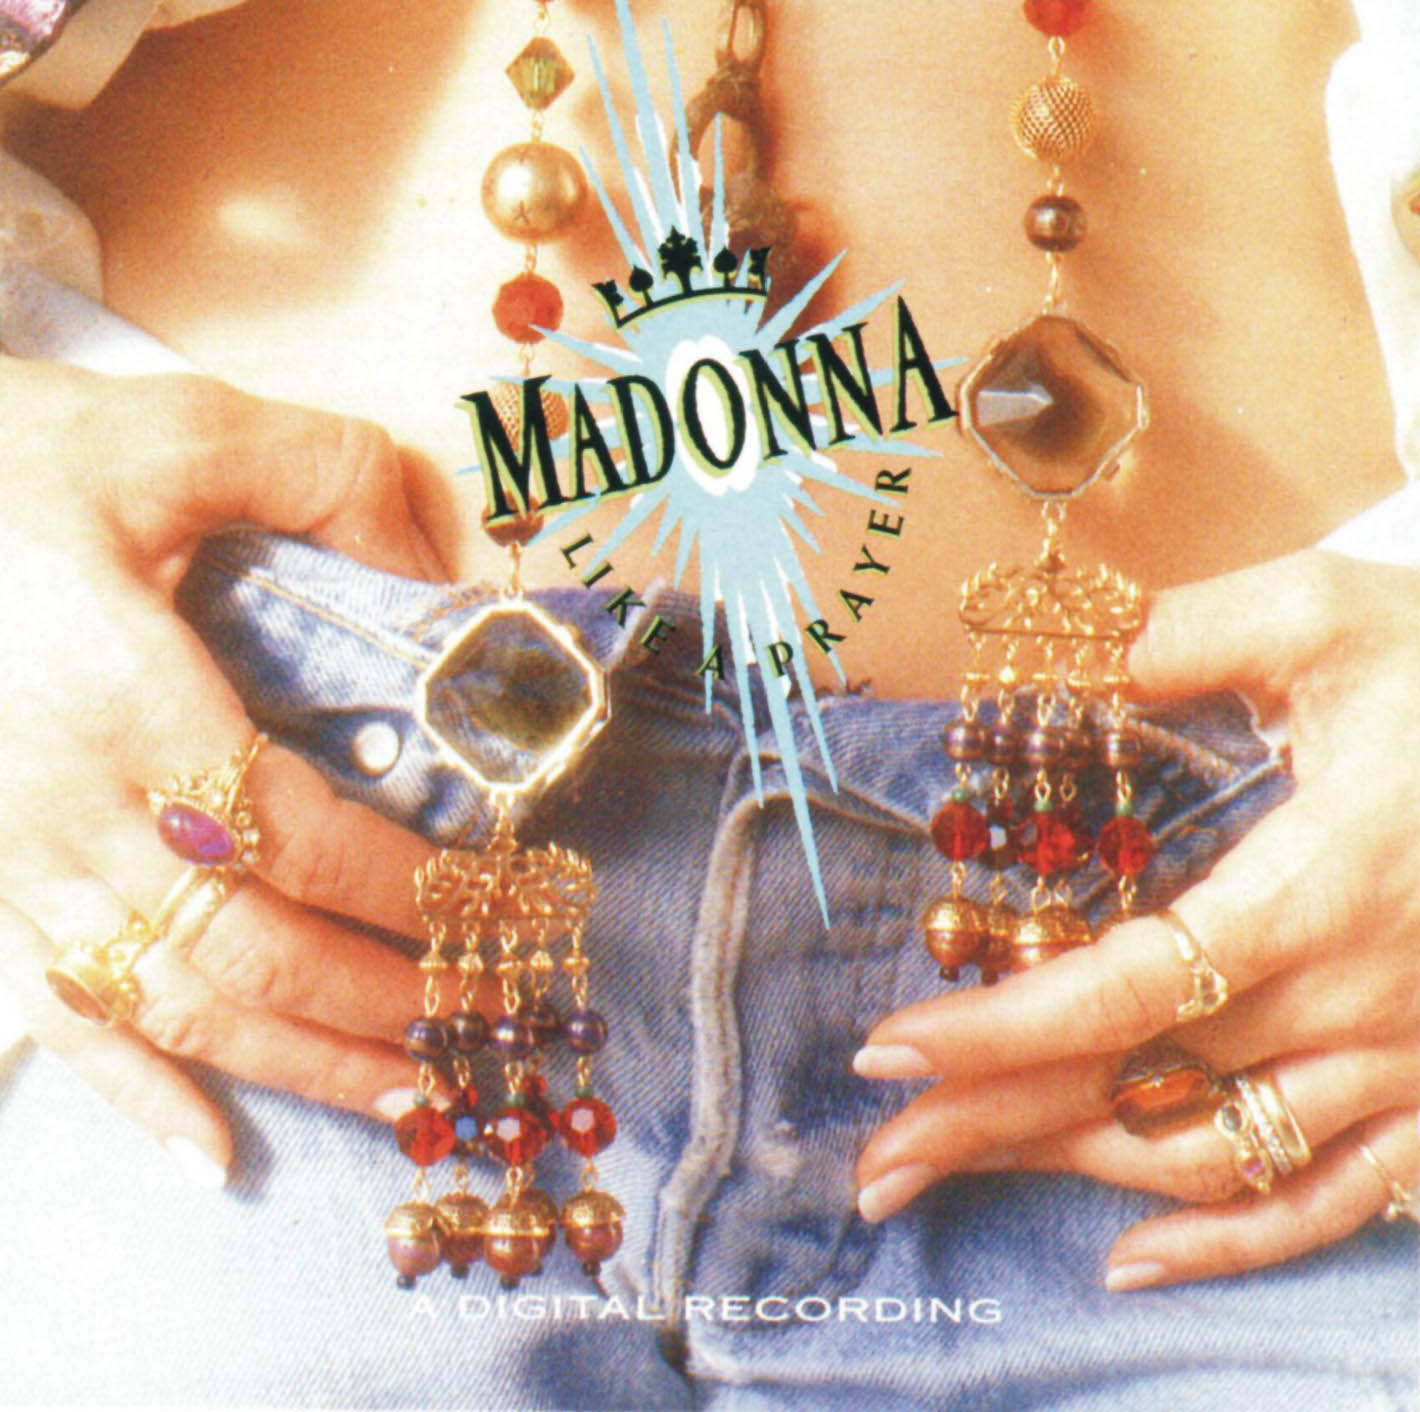 http://3.bp.blogspot.com/-X0KChSsuexk/UREuzsW3pJI/AAAAAAAAIWU/W4fnzH2djlE/s1600/Madonna-Like_a_Prayer-Frontal.jpg